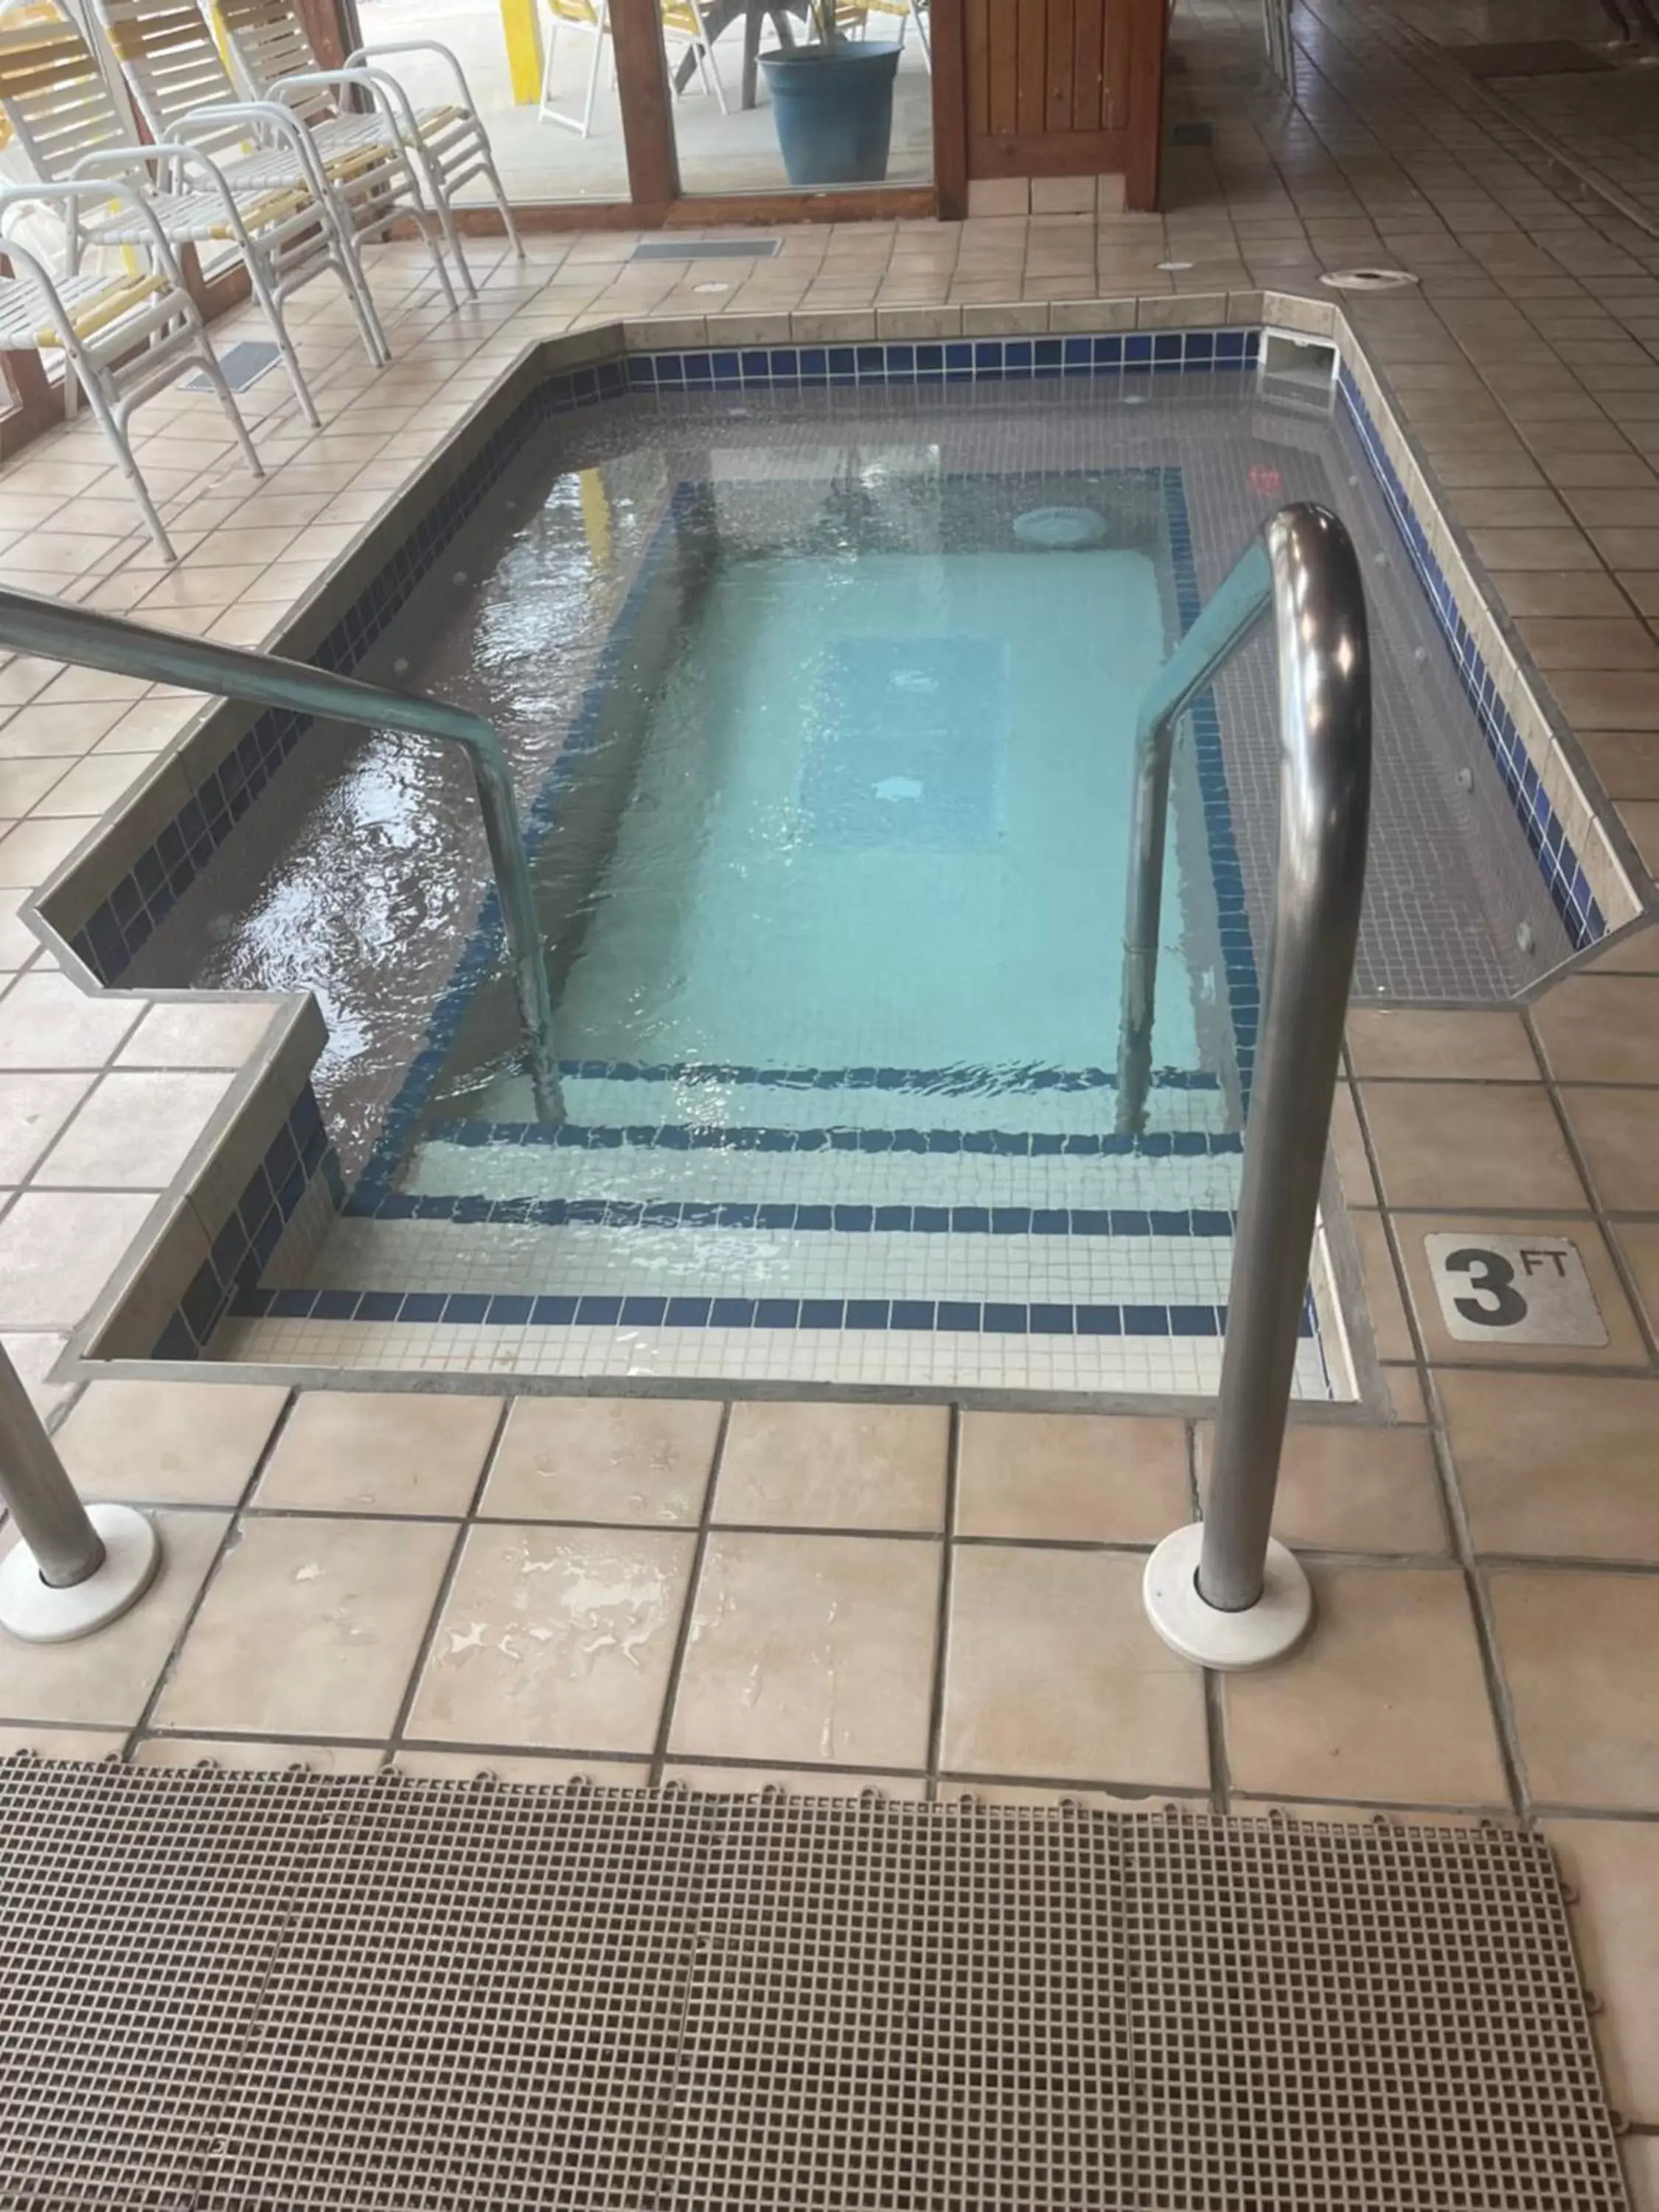 Hot Tub, Swimming Pool in Caribbean Club Resort